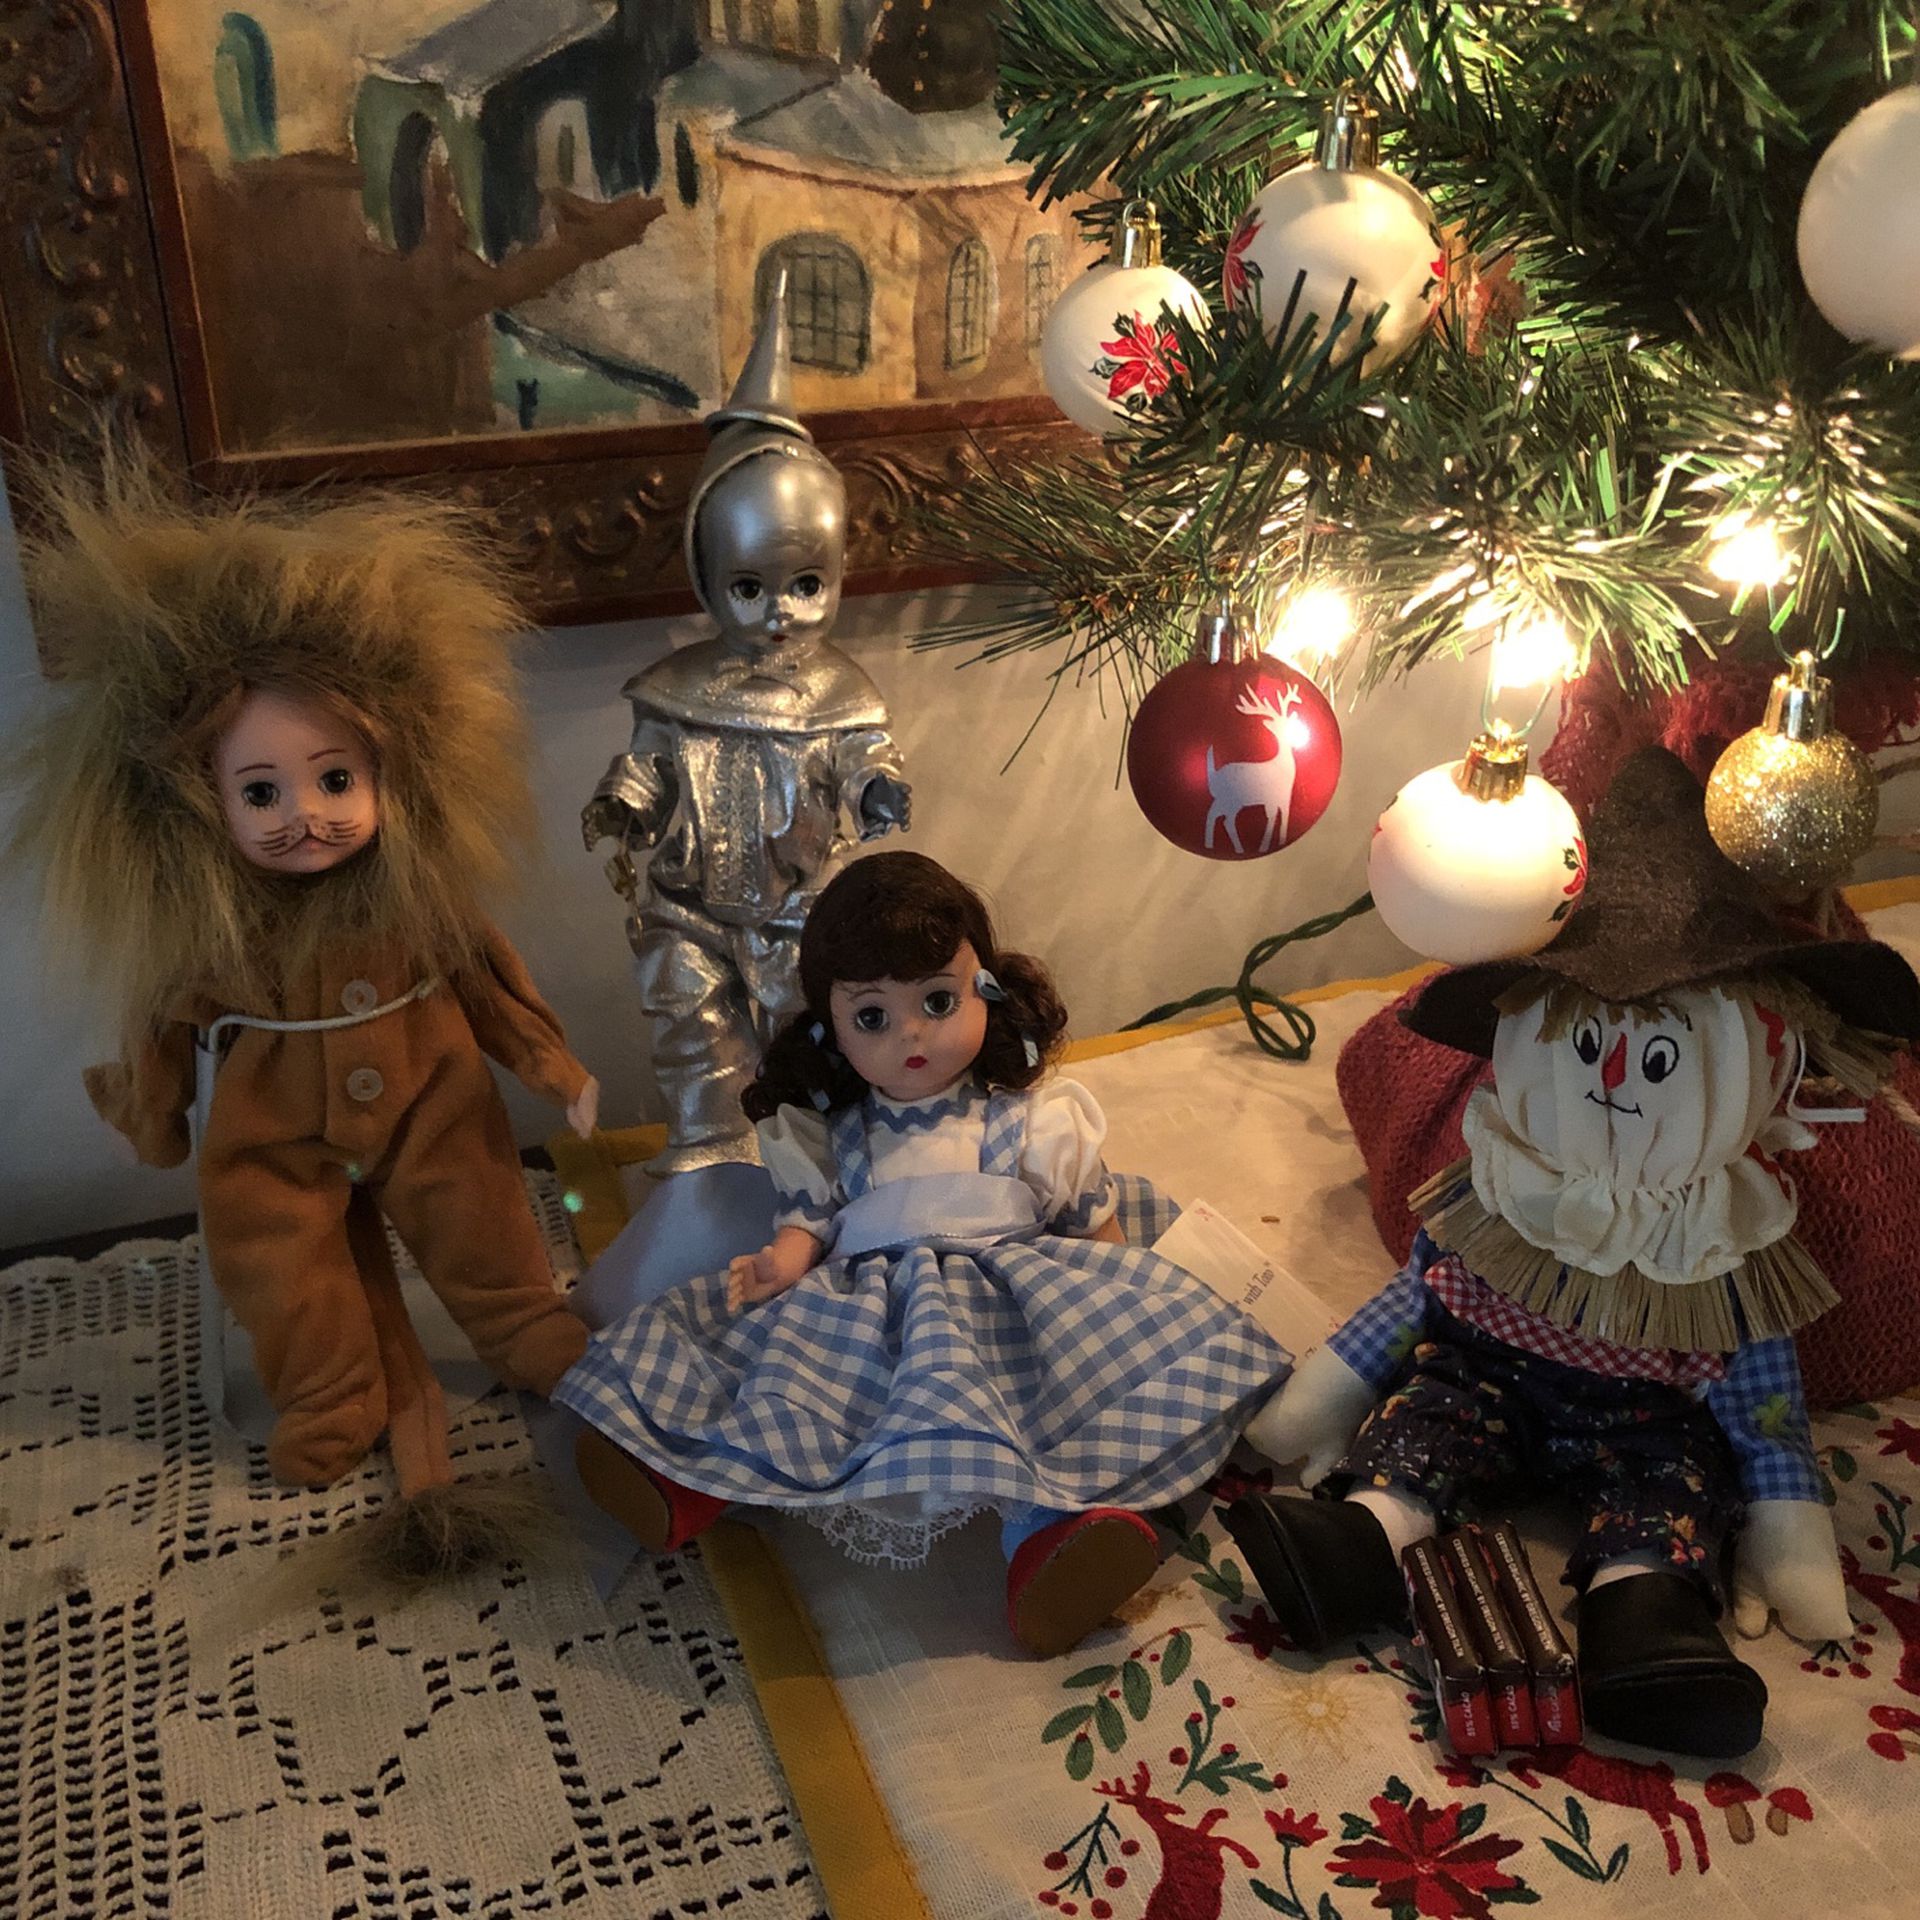 4 Wizard Of Oz Dolls